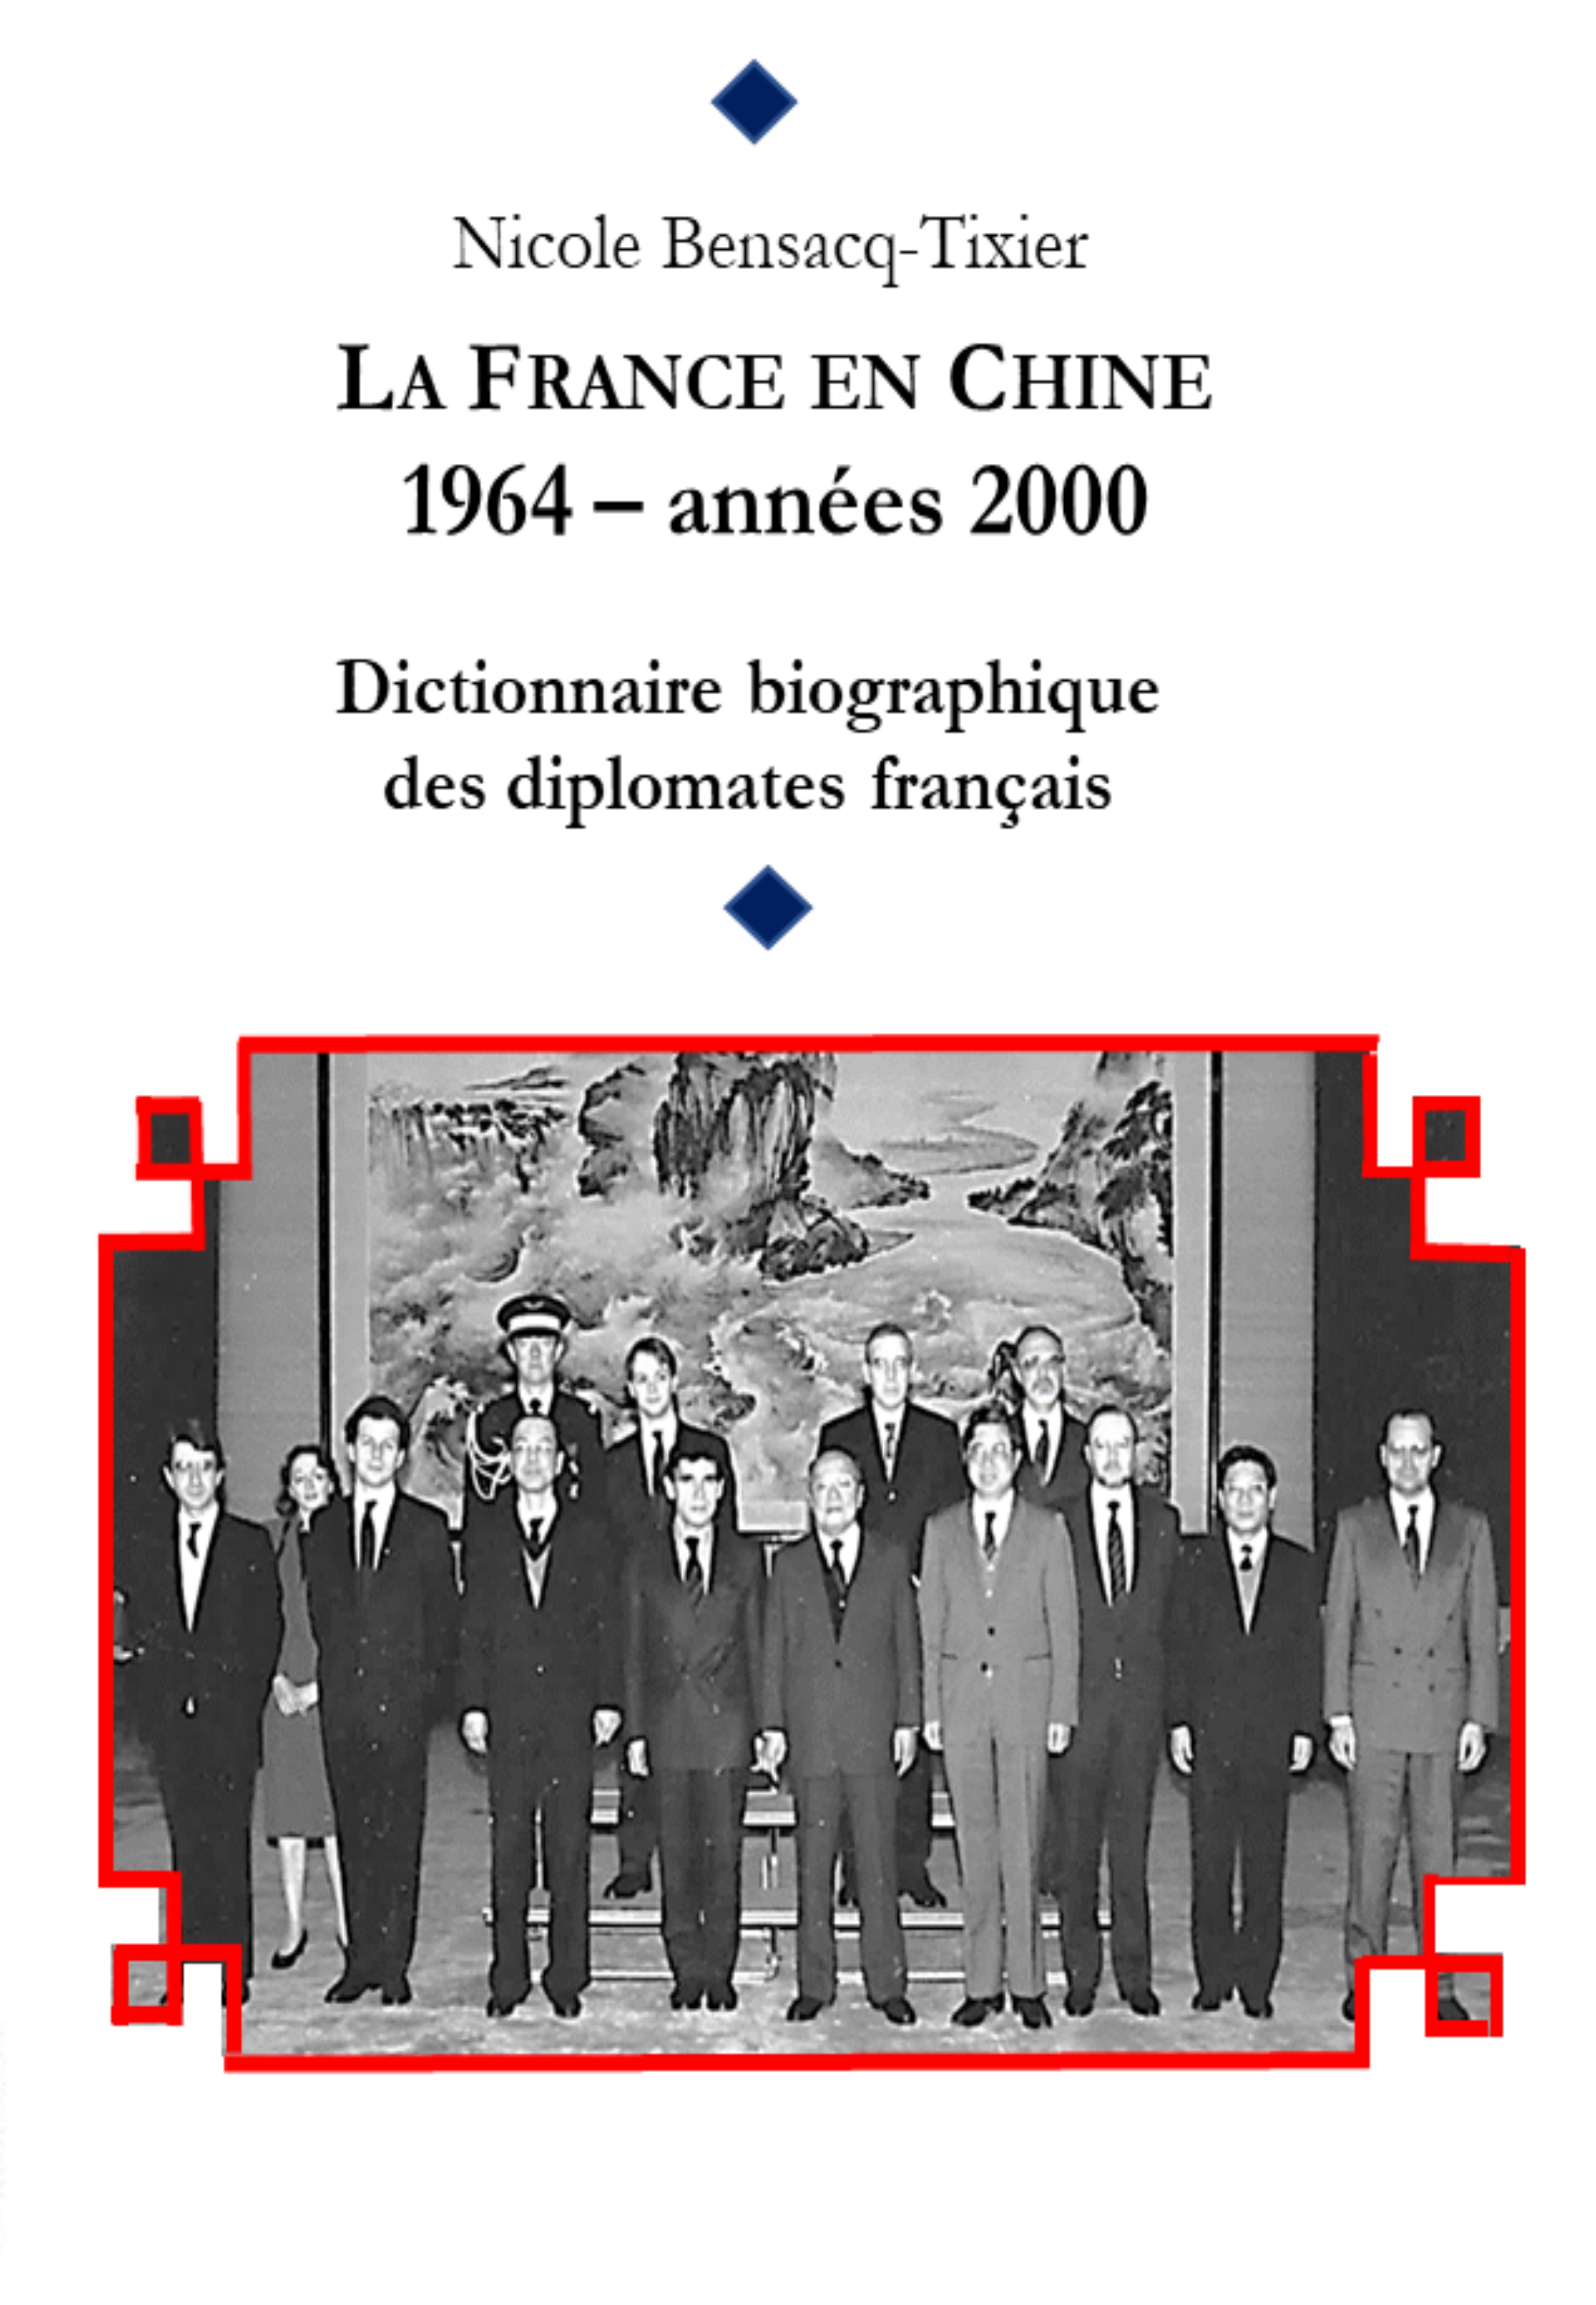 Dict. diplomates en Chine 1964-2000